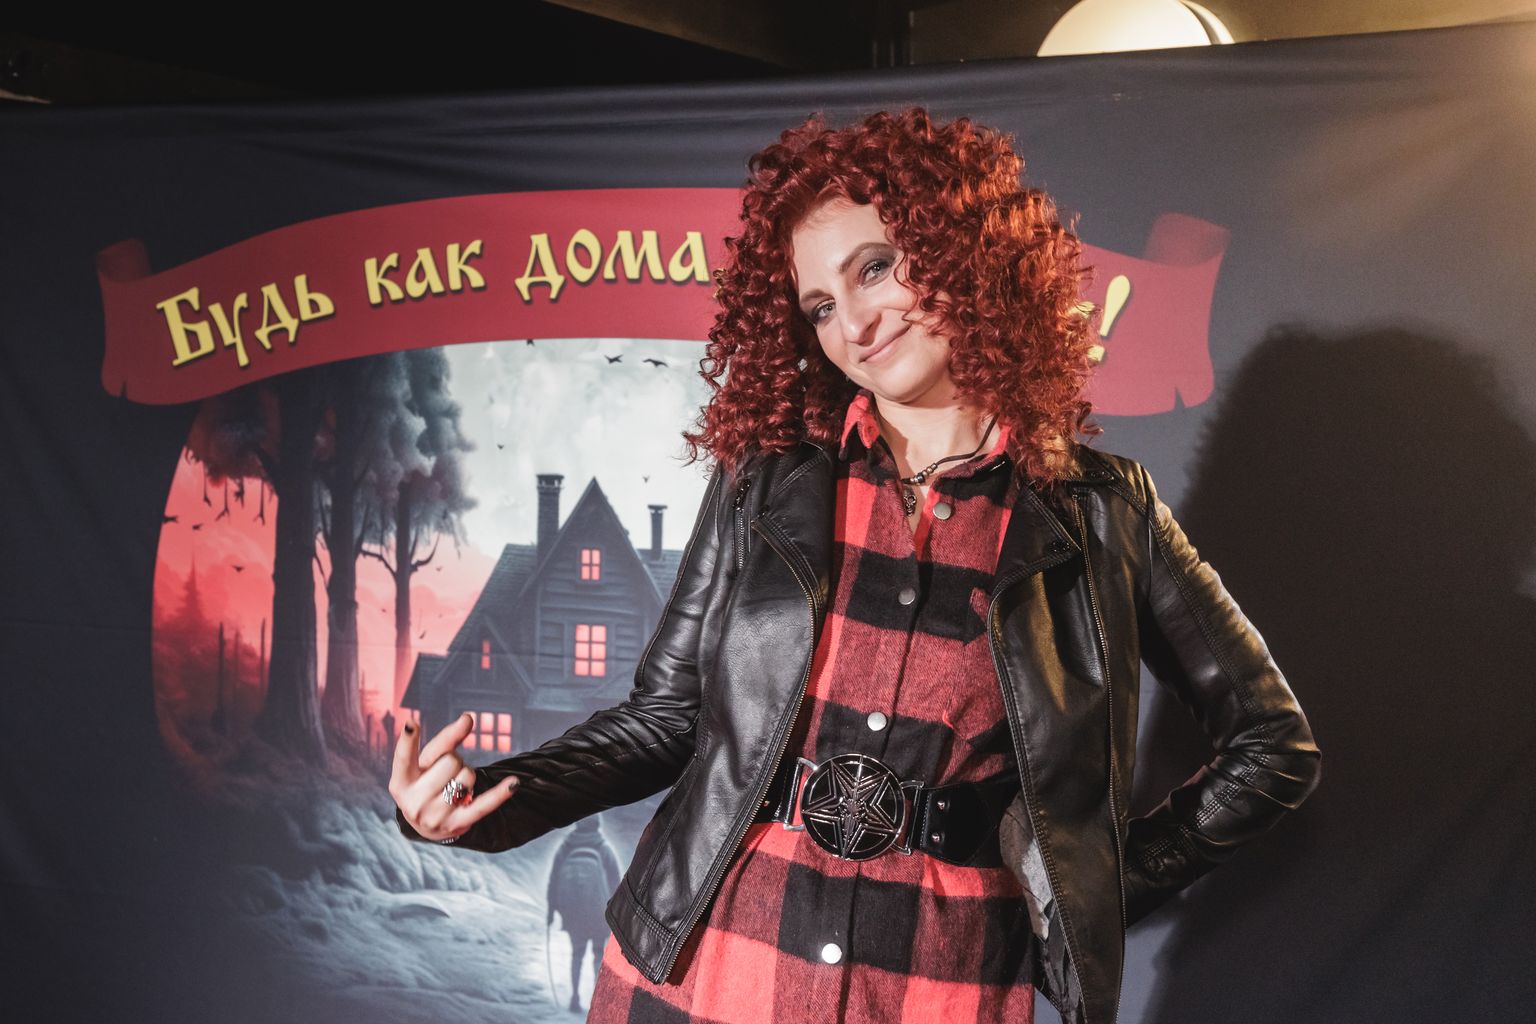 Надежда Зеленко, организатор фестиваля "Будь как дома, путник", ведьма из "Ведьма и Осел".